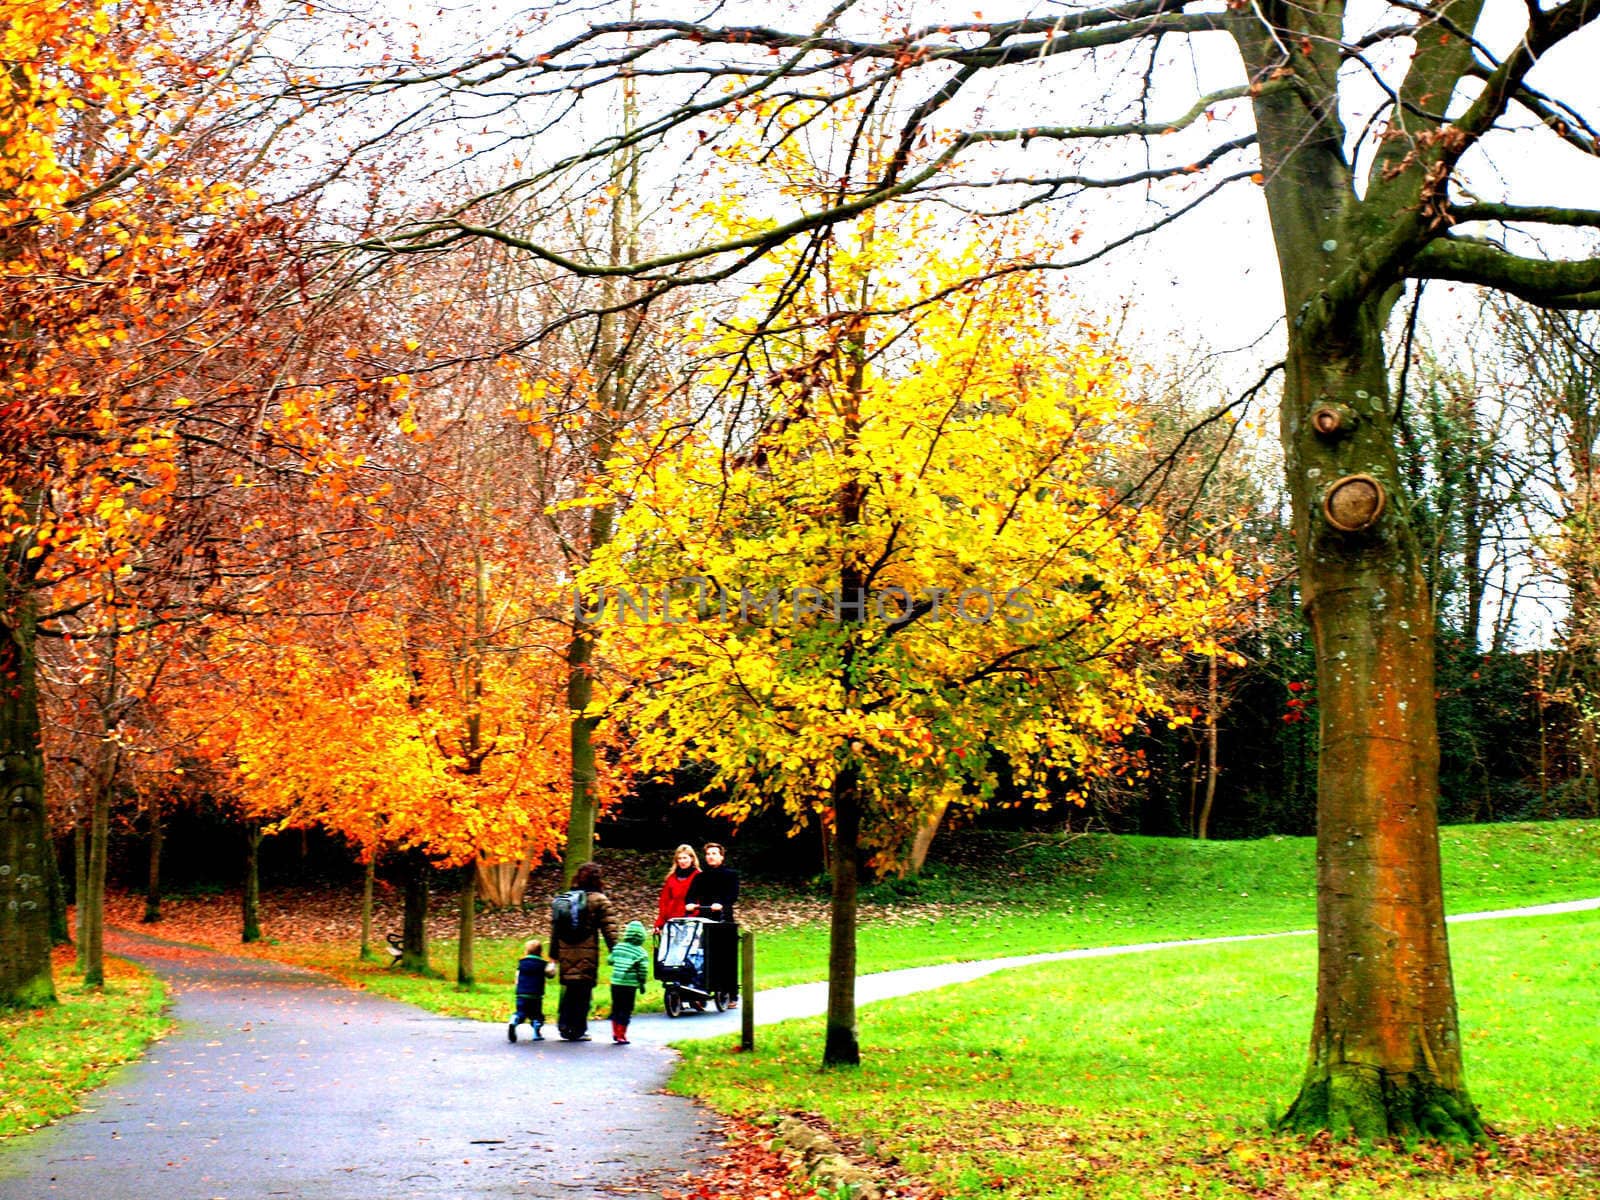 people walking in the park by lulu2626